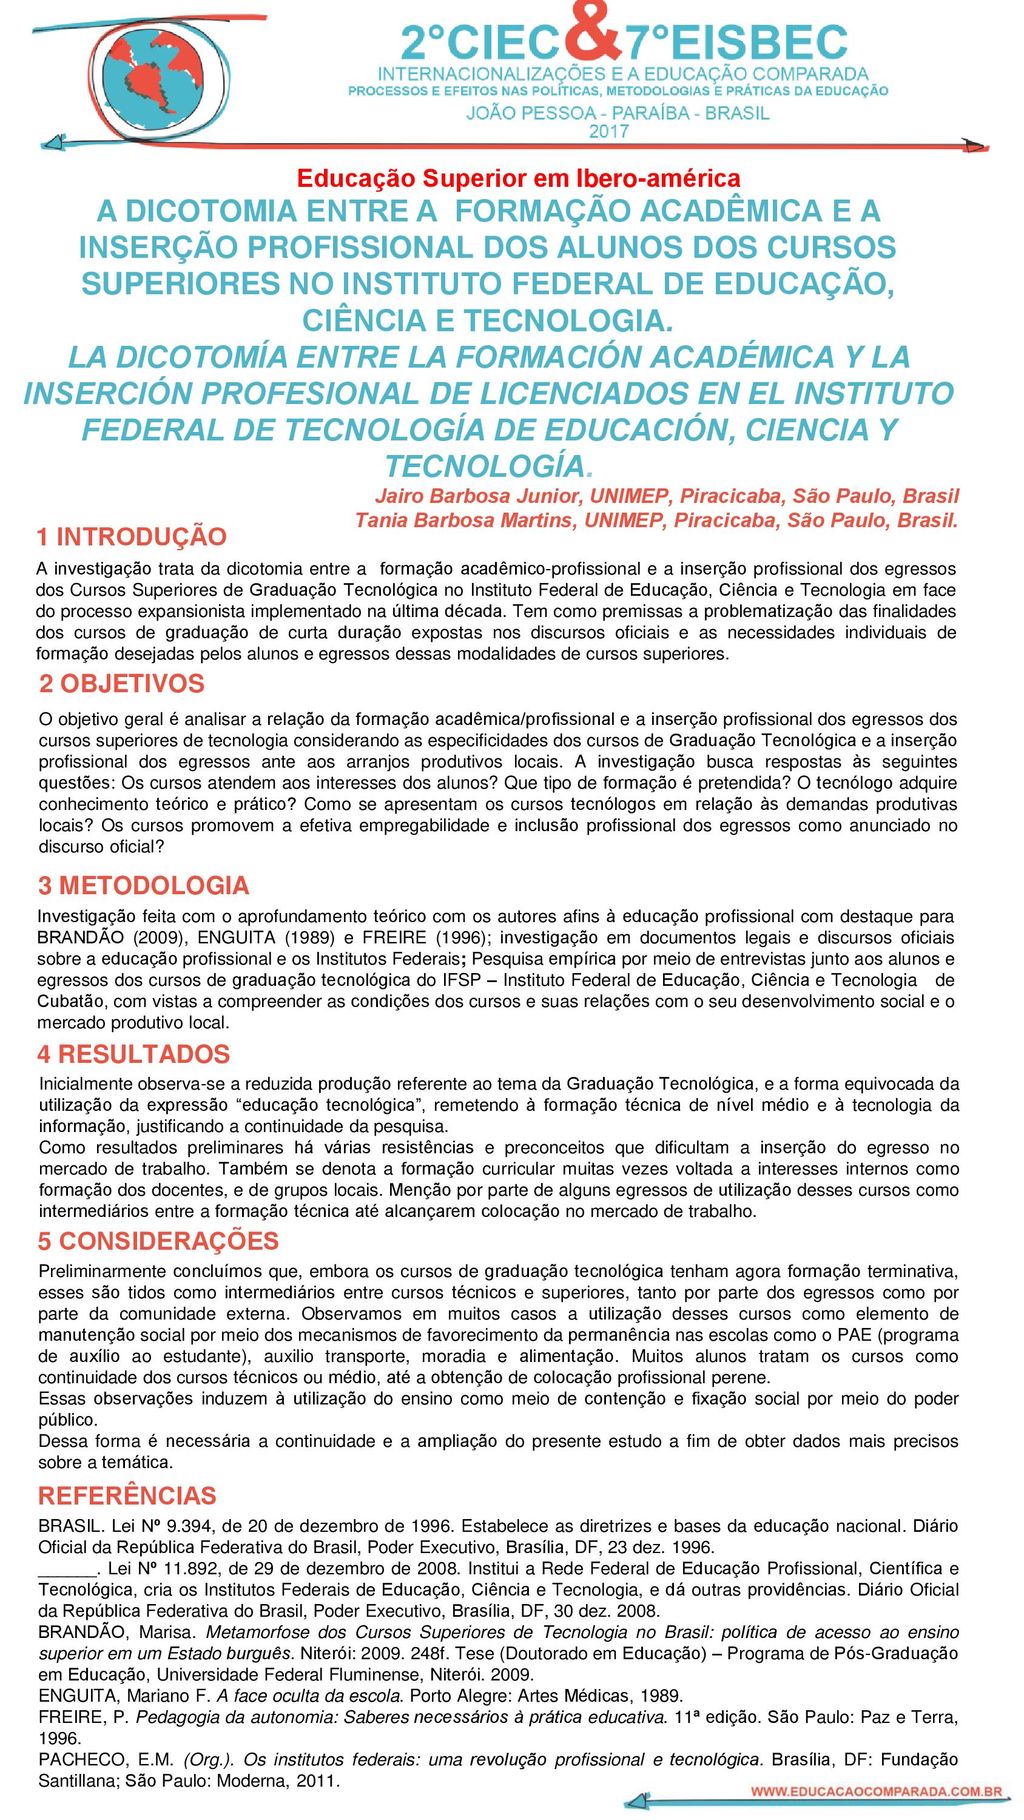 Educação Superior em Ibero-américa